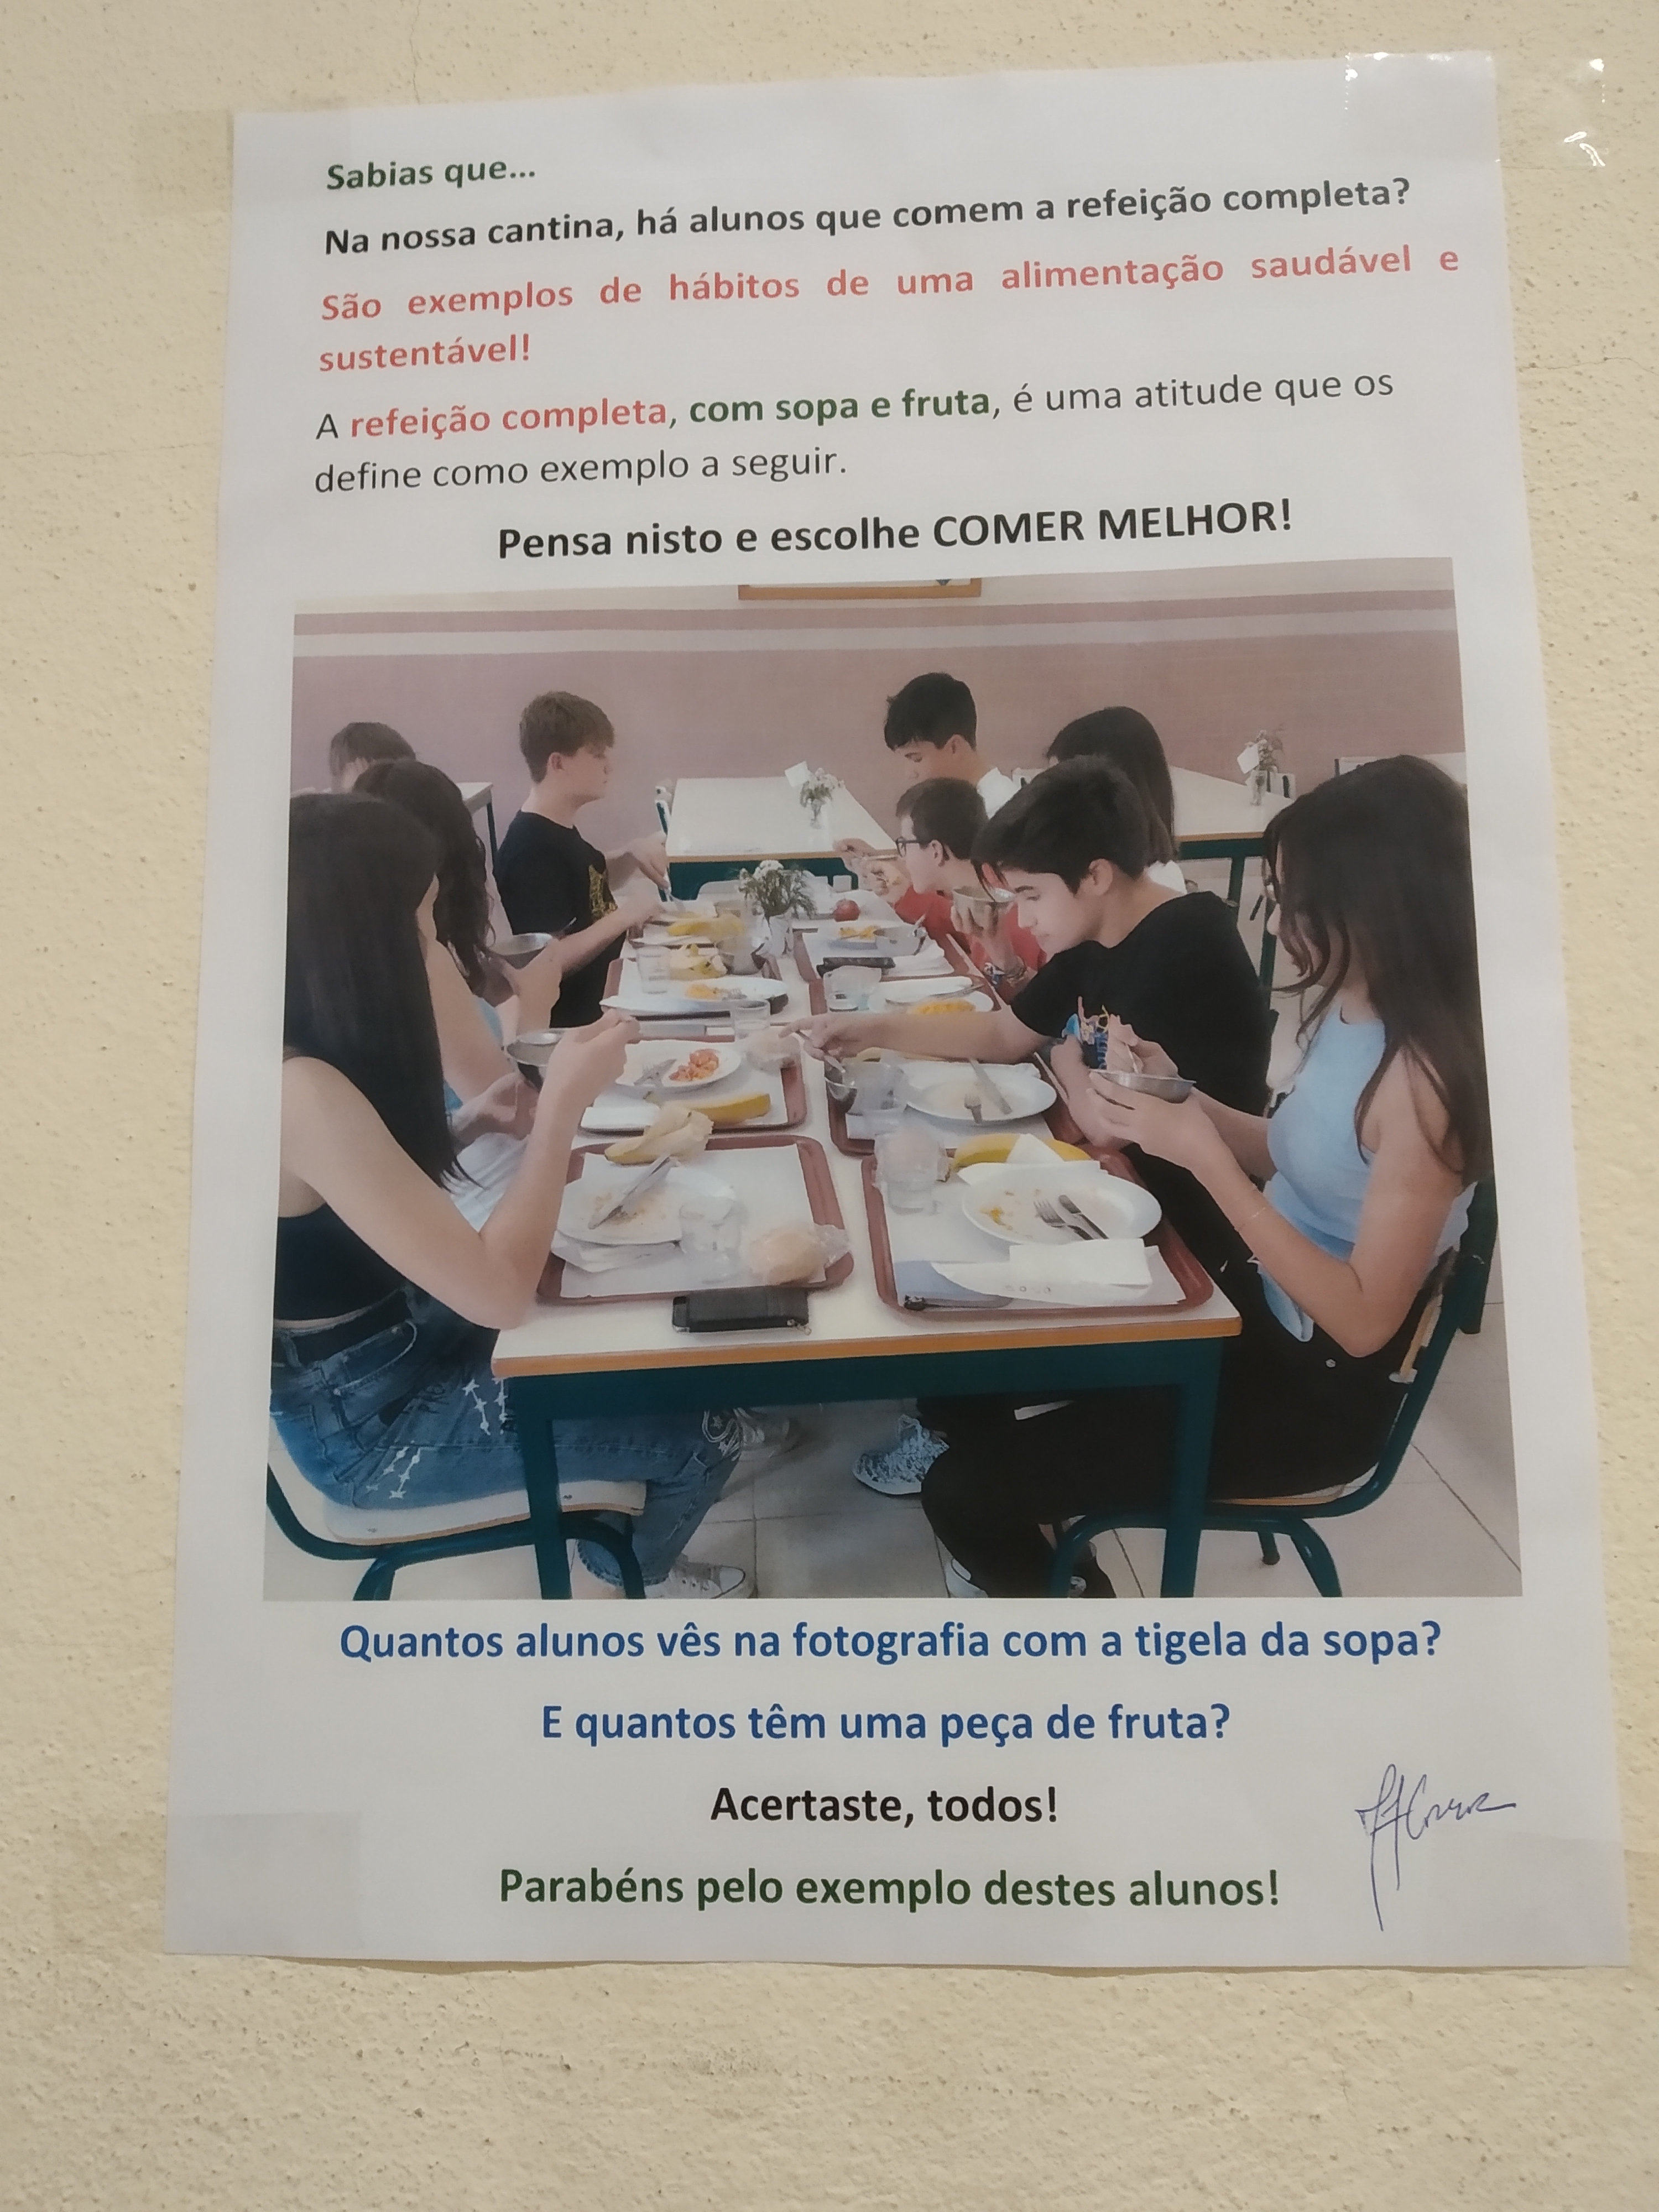 Cartaz utilizado como exemplo a seguir pelos alunos (fotografia de alunos na cantina).